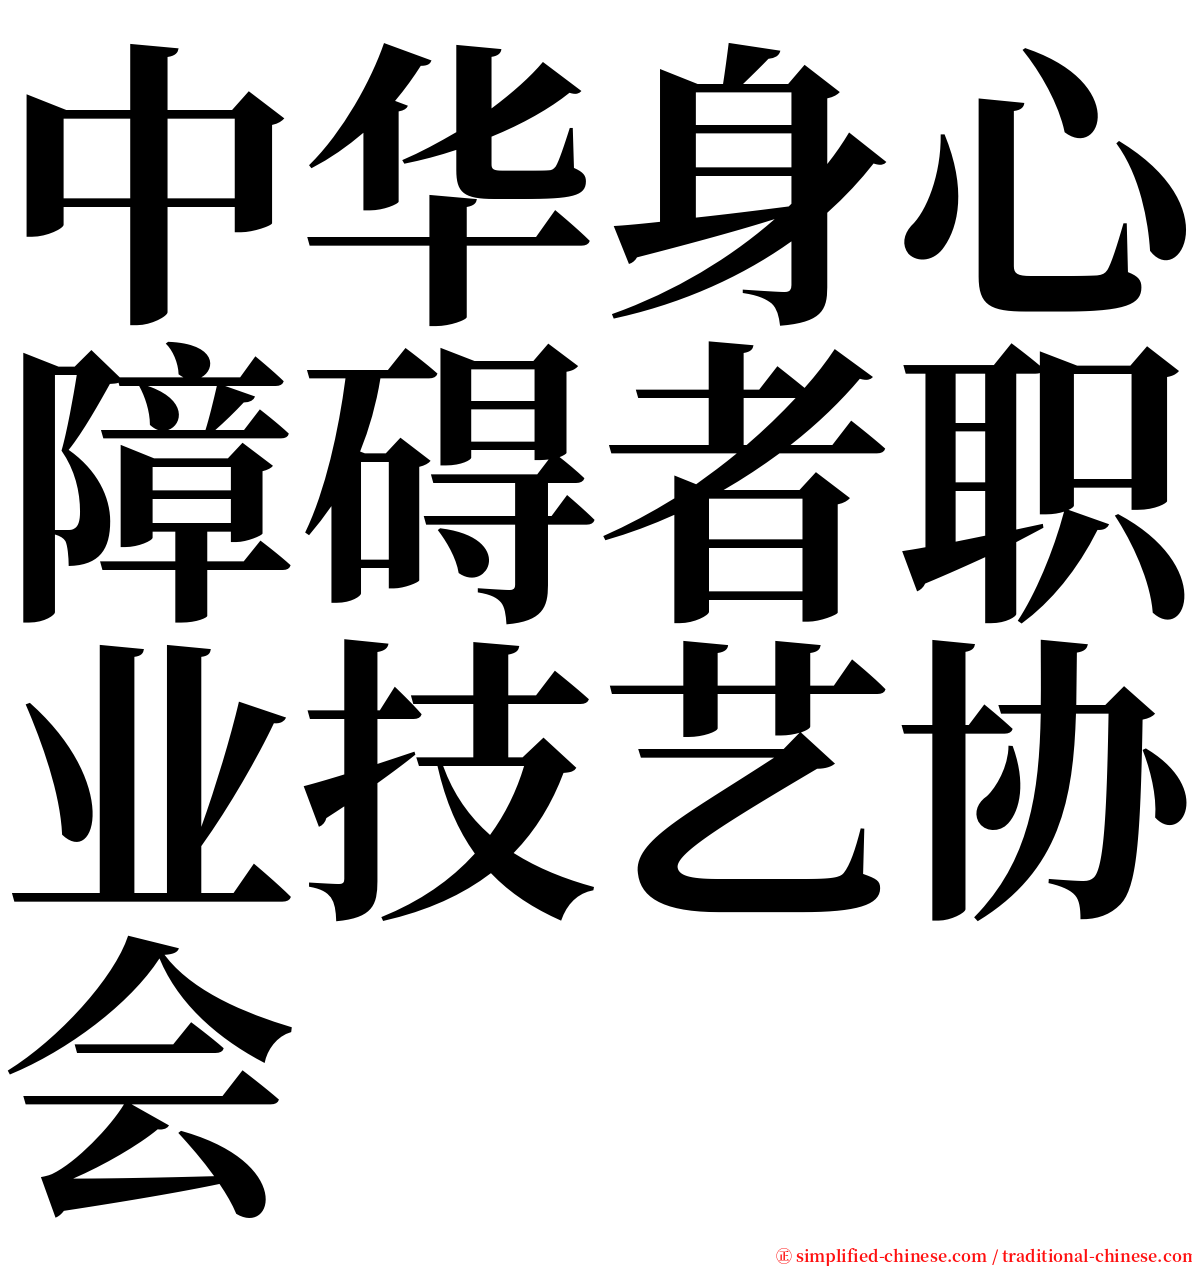 中华身心障碍者职业技艺协会 serif font